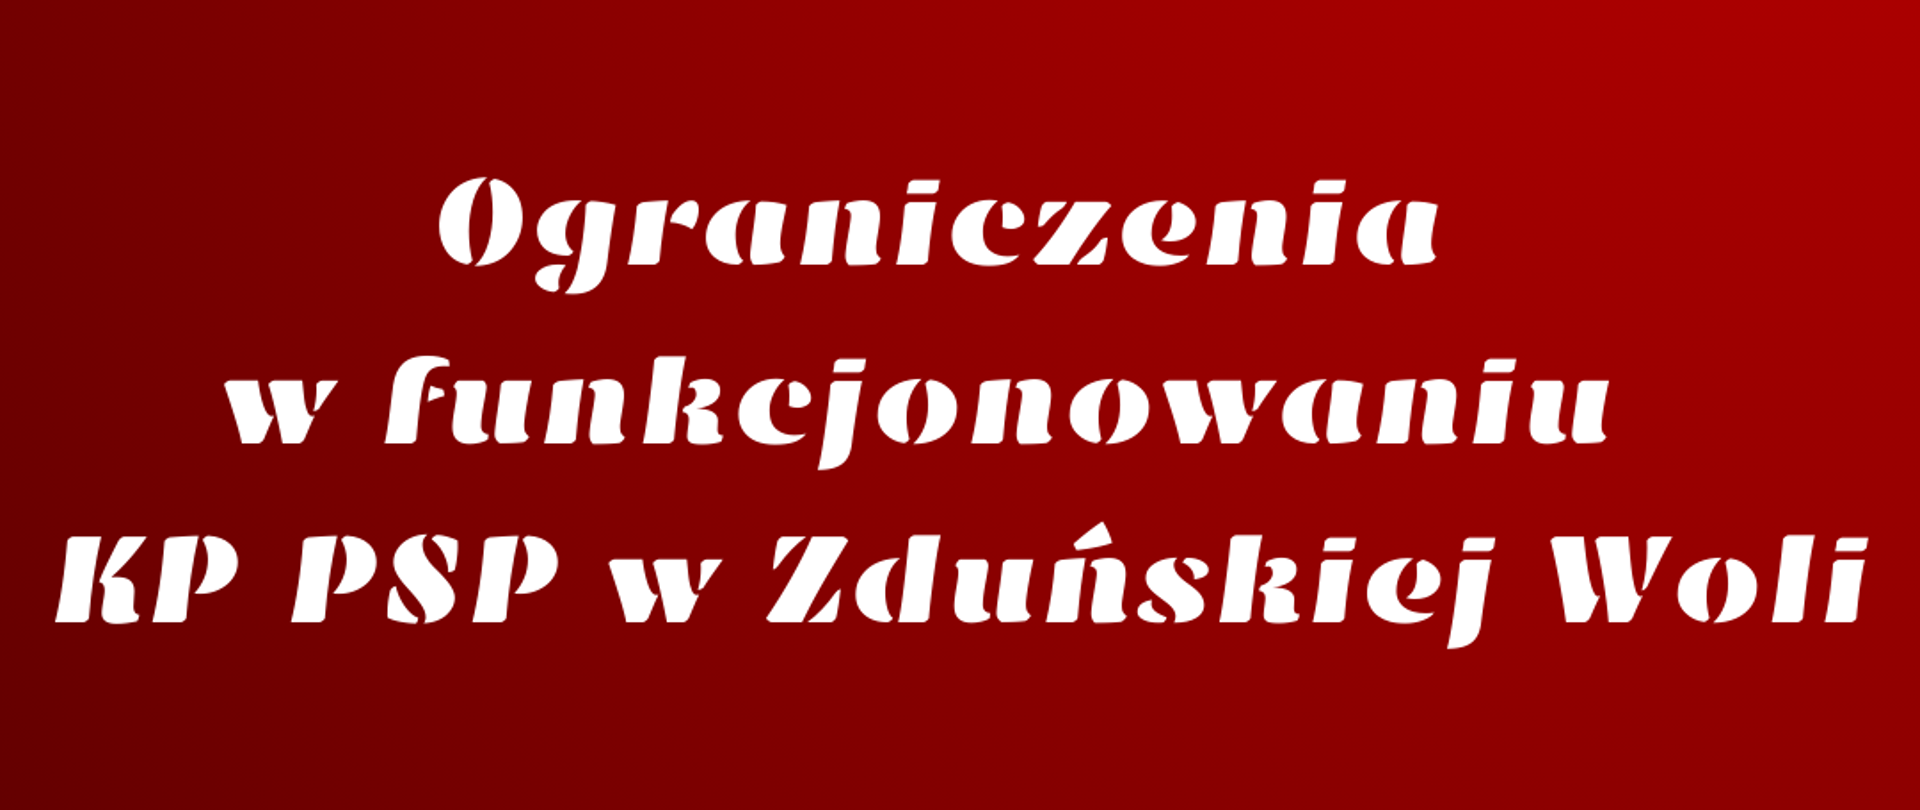 Na czerwonym tle biały napis: Ograniczenia w funkcjonowaniu KP PSP w Zduńskiej Woli